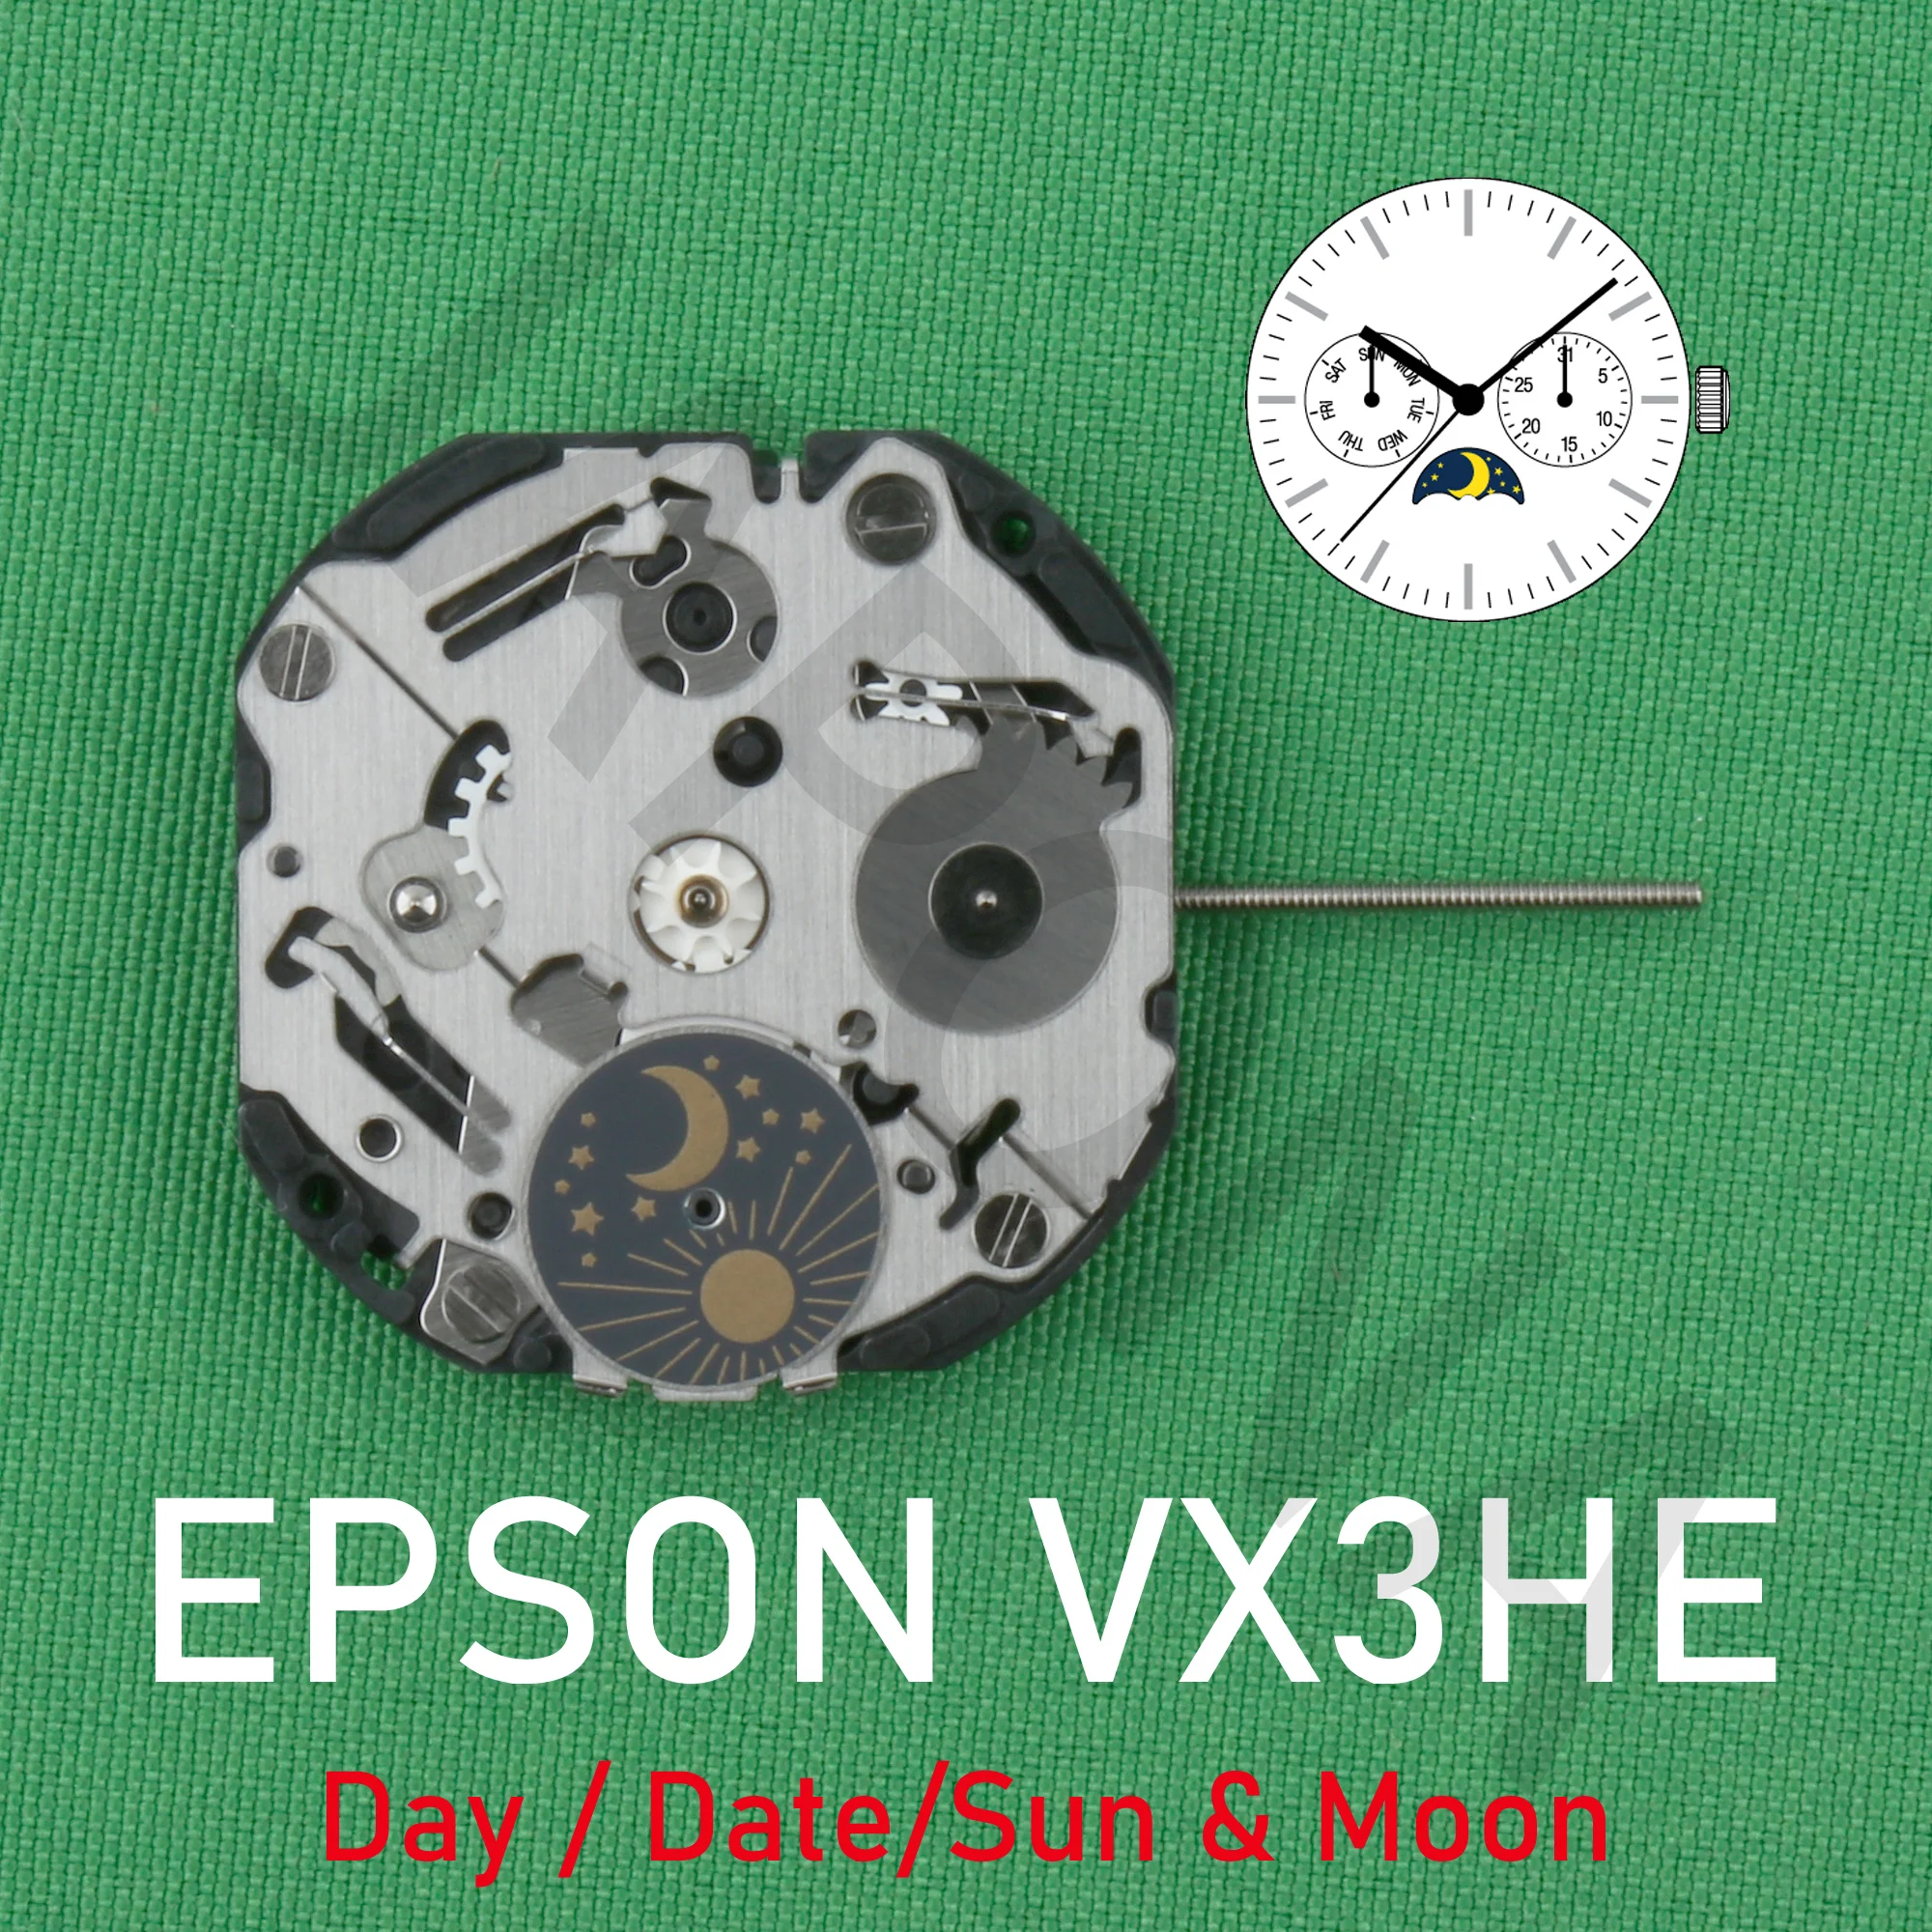 

Часовой механизм VX3H epson VX3HE, Аналоговый кварцевый механизм 10 1/2 '', тонкий механизм, 3 стрелки (H/M/S) и 3 глаза в день/дата/солнце и луну